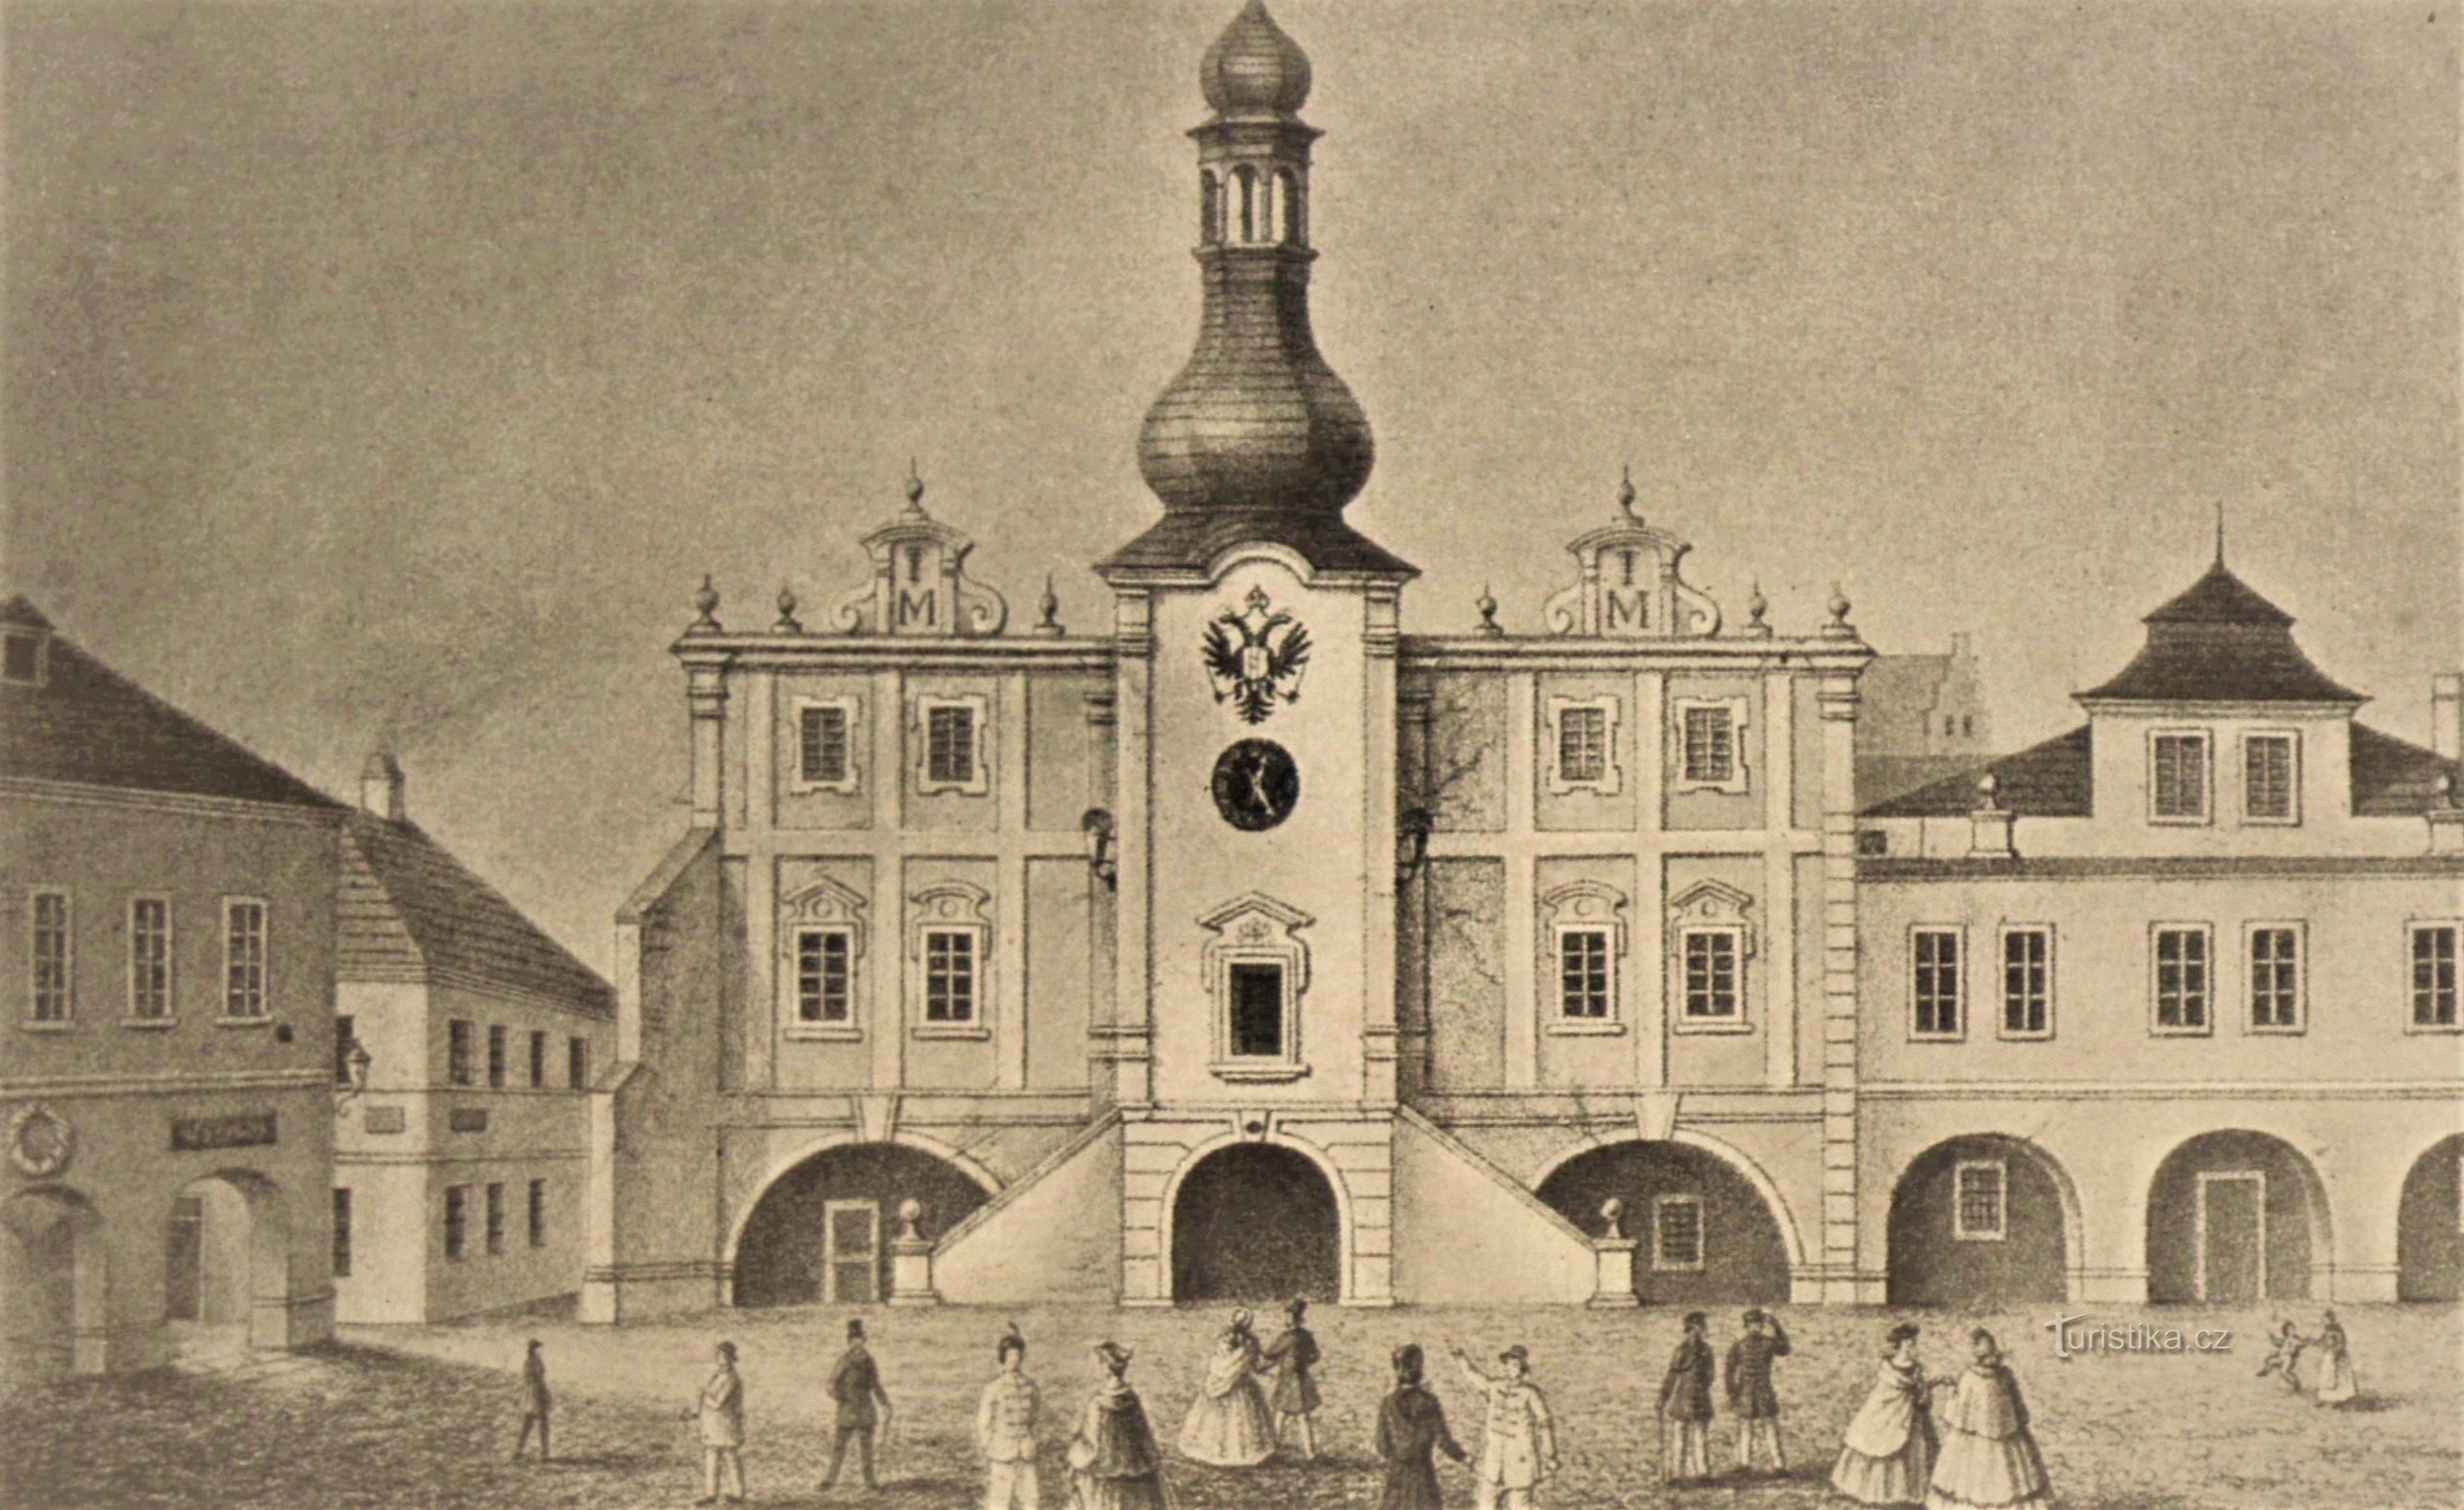 Izvorna gradska vijećnica u Nové Bydžovu (prije 1863.)